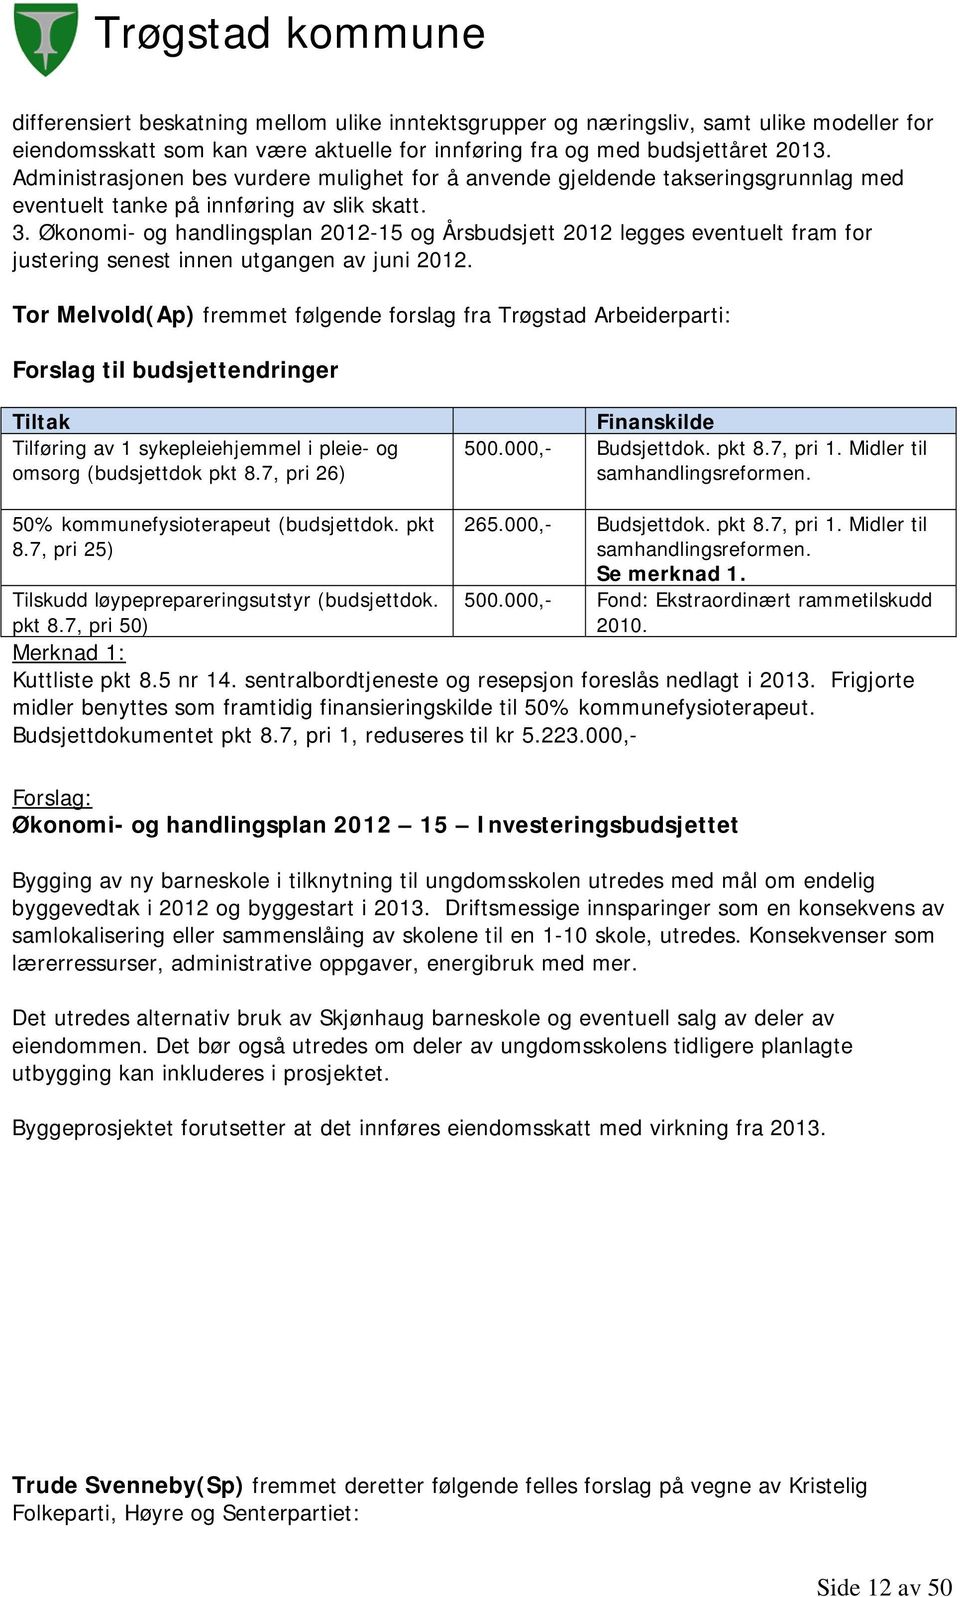 Økonomi- og handlingsplan 2012-15 og Årsbudsjett 2012 legges eventuelt fram for justering senest innen utgangen av juni 2012.